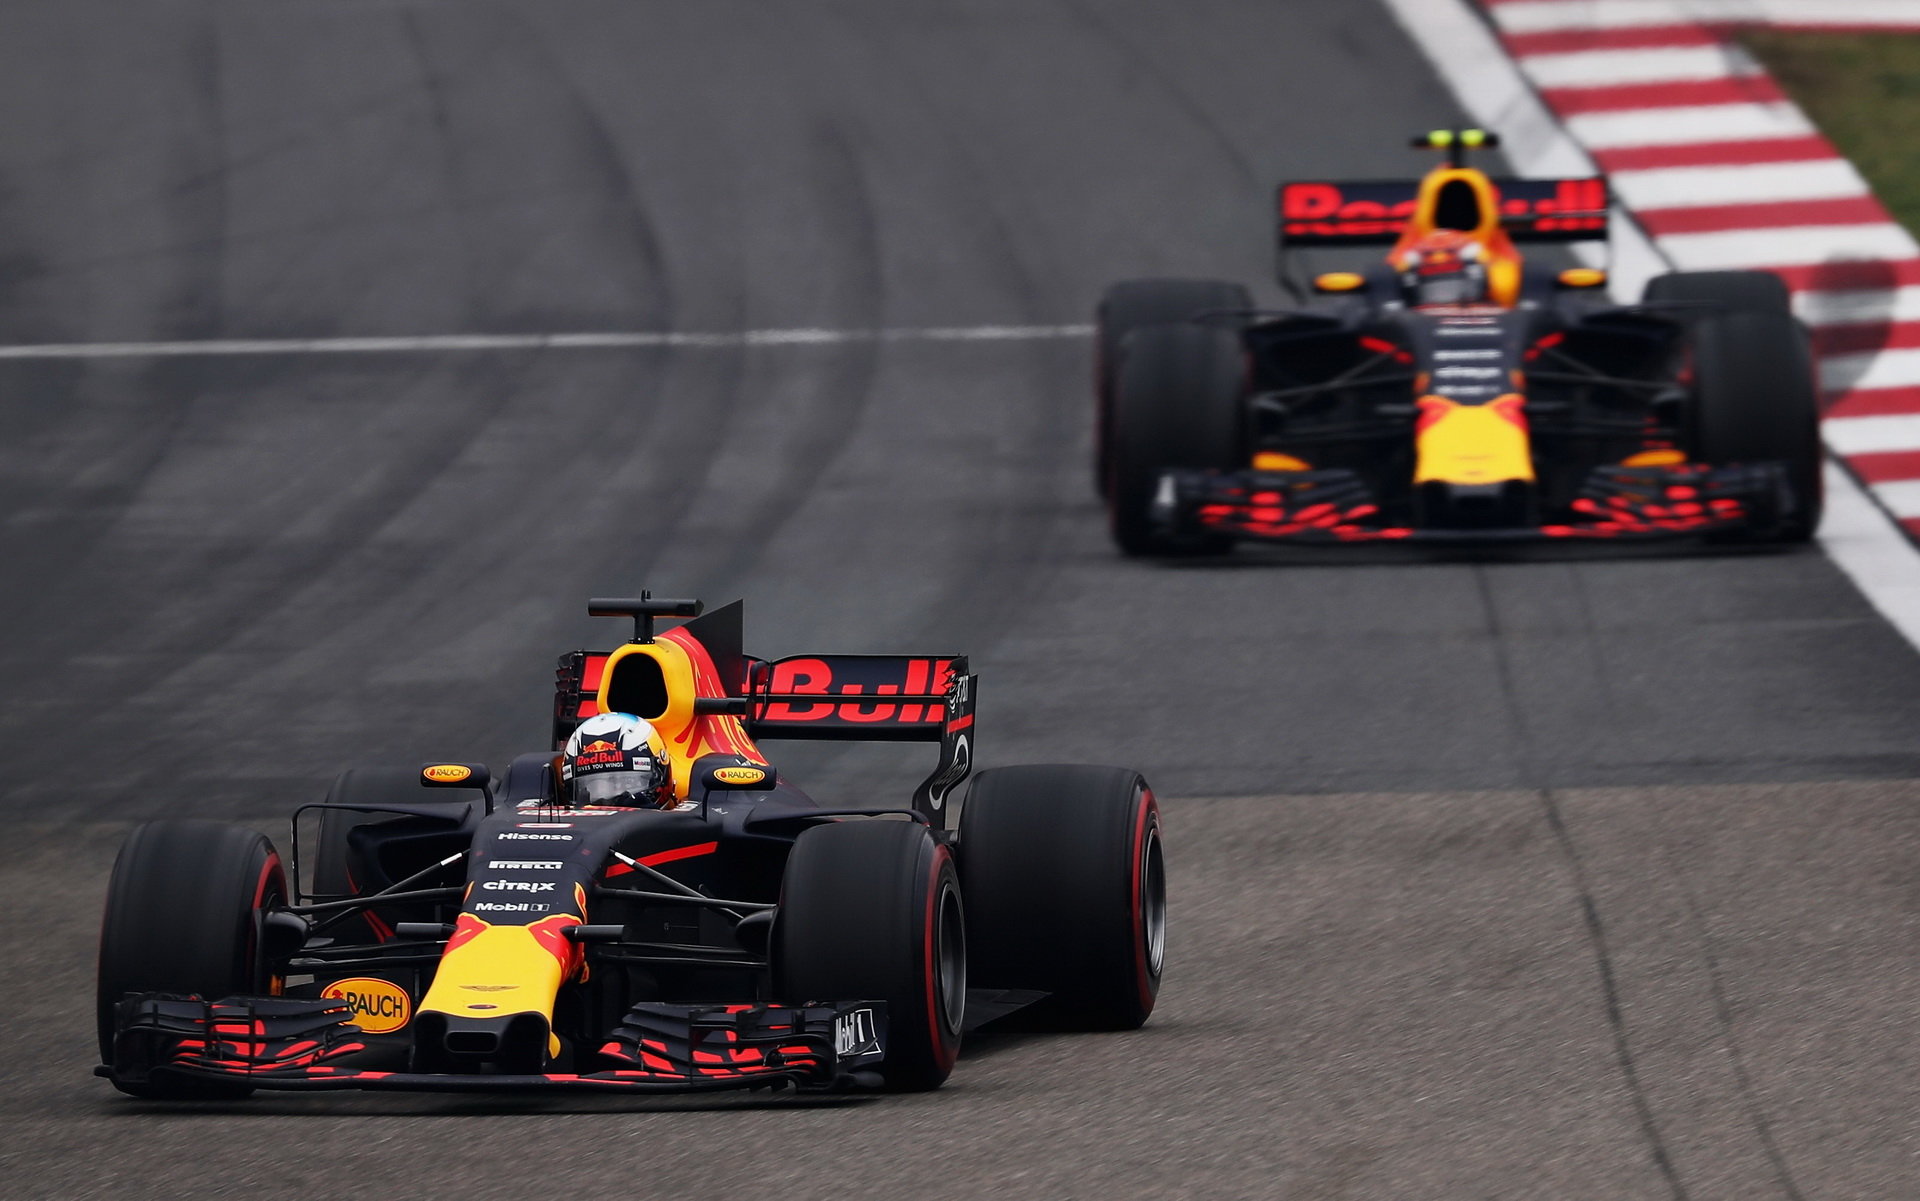 Daniel Ricciardo a Max Verstappen měli v Číně odlišné nastavené monoposty, čímž Marko vysvětluje rozdíly v jejich výkonnosti v různých fázích závodu